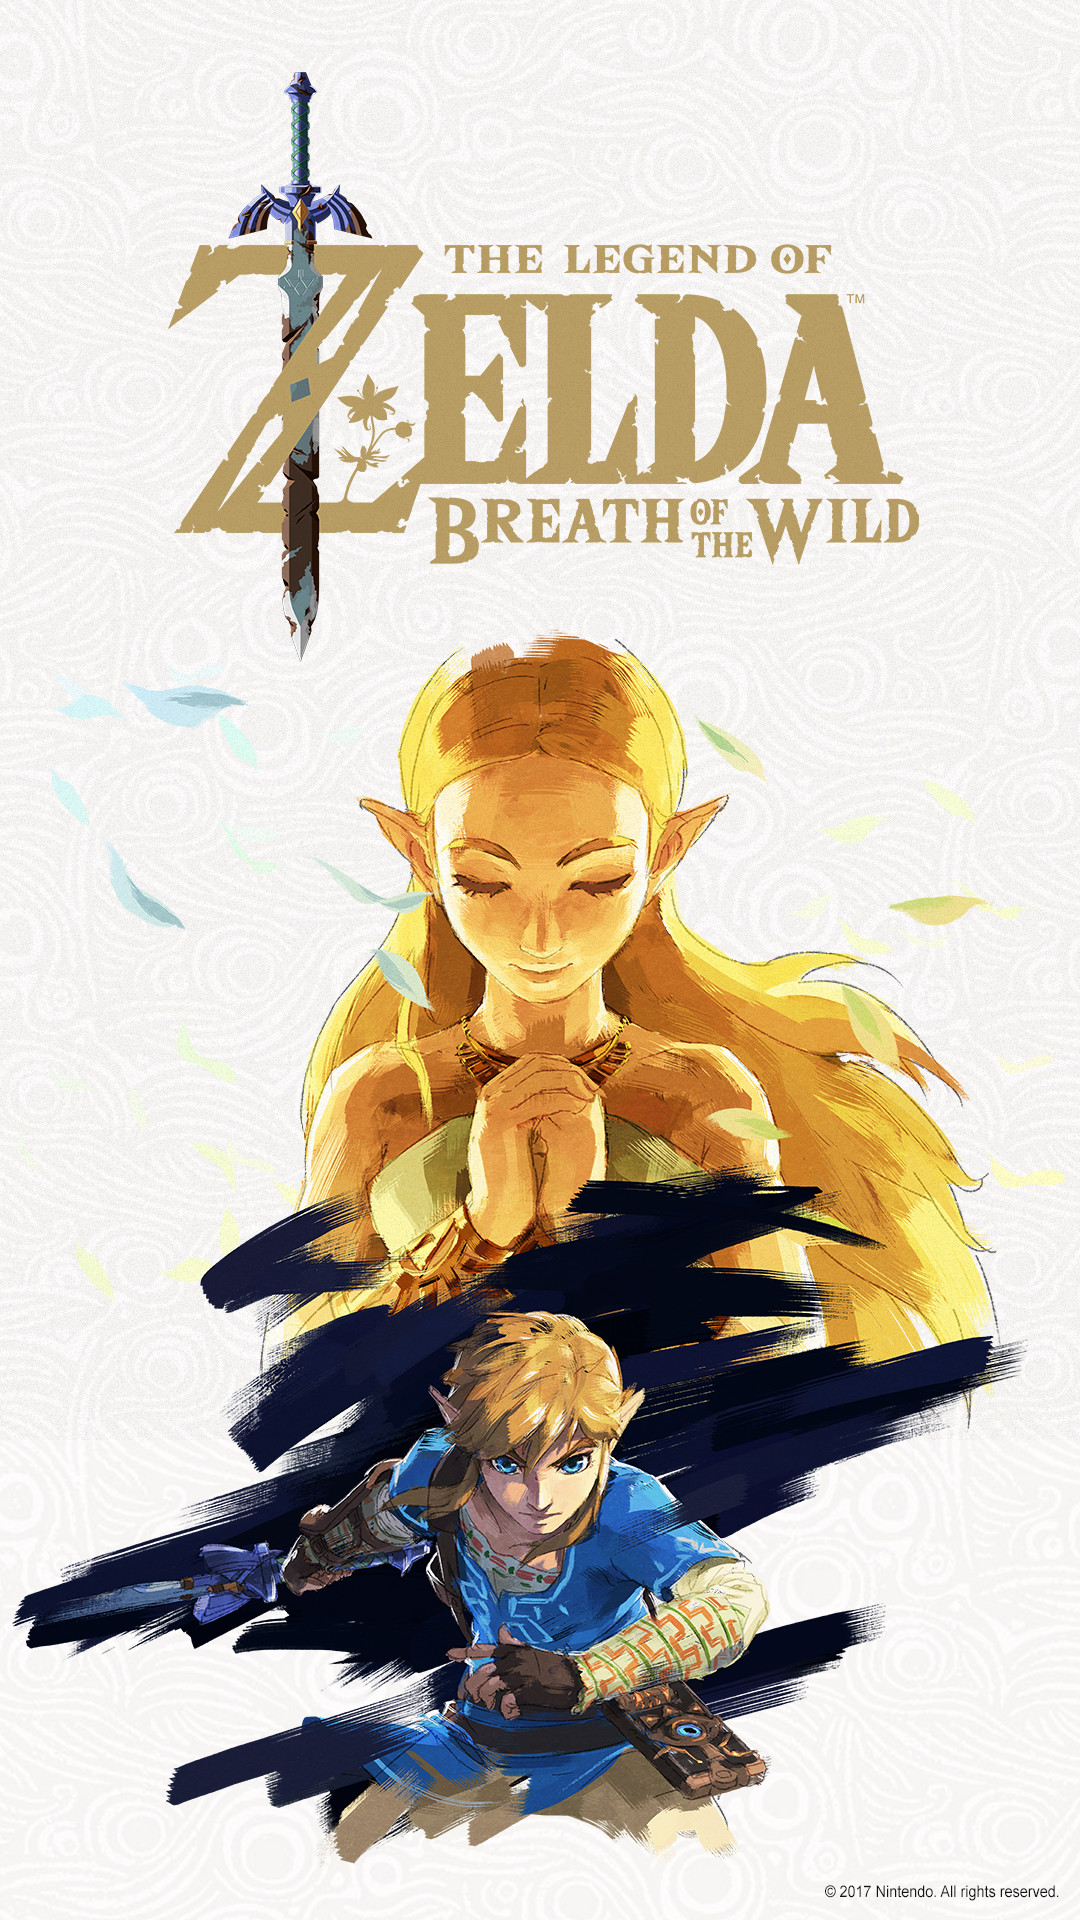 The Legend of Zelda: games | | Nintendo Wild Nintendo the Breath | of Games Switch